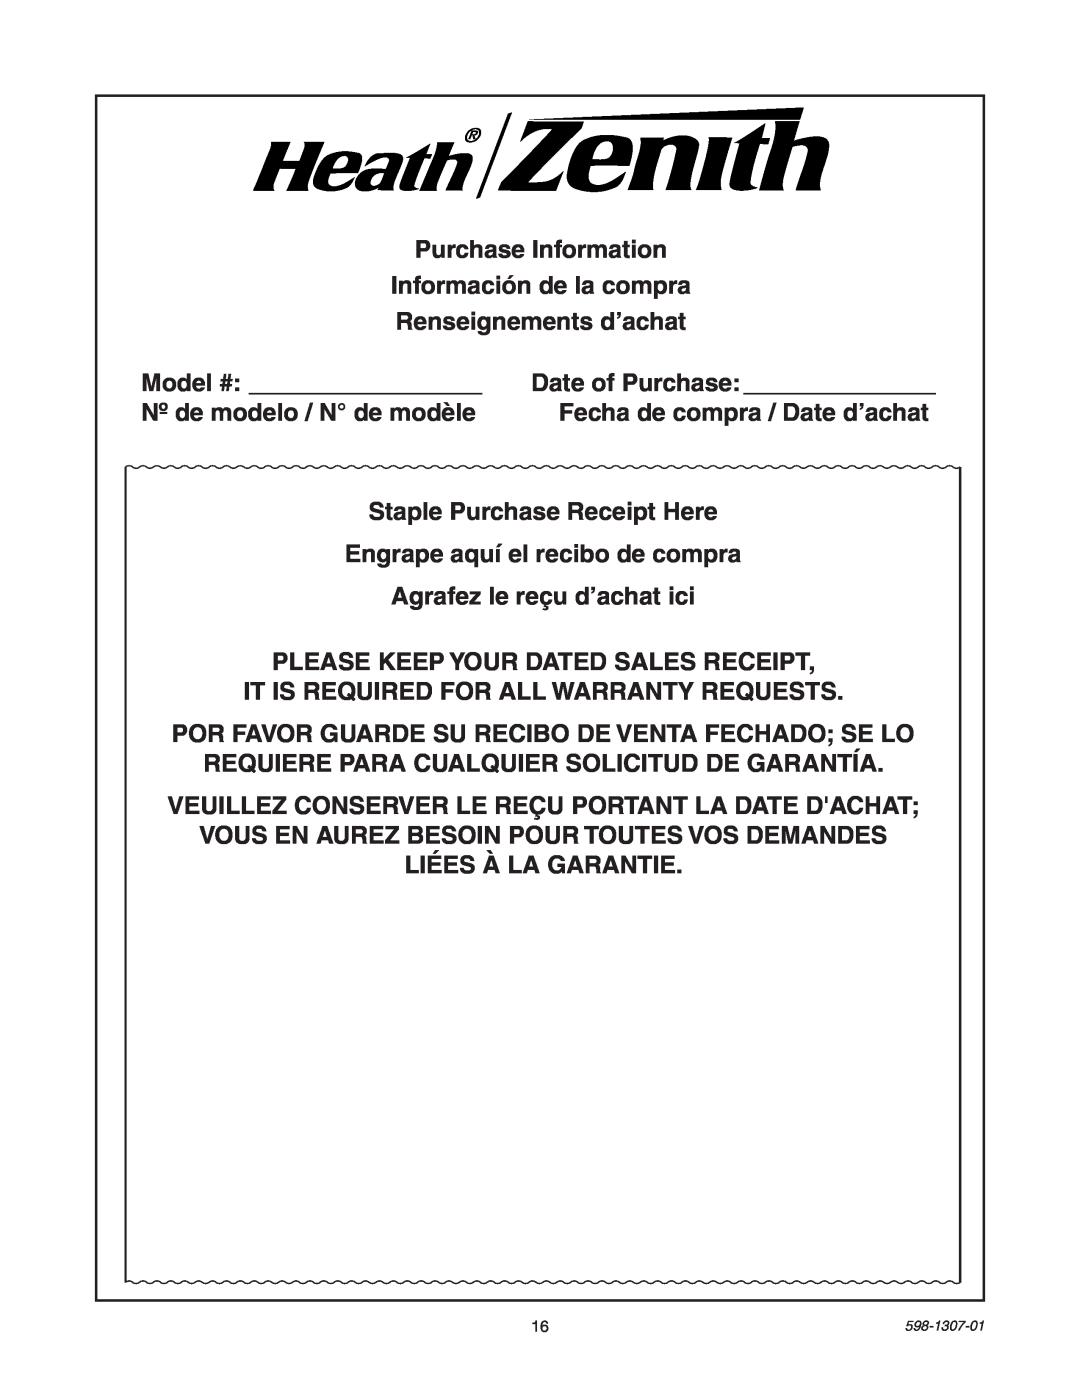 Heath Zenith 5716 manual Purchase Information Información de la compra 